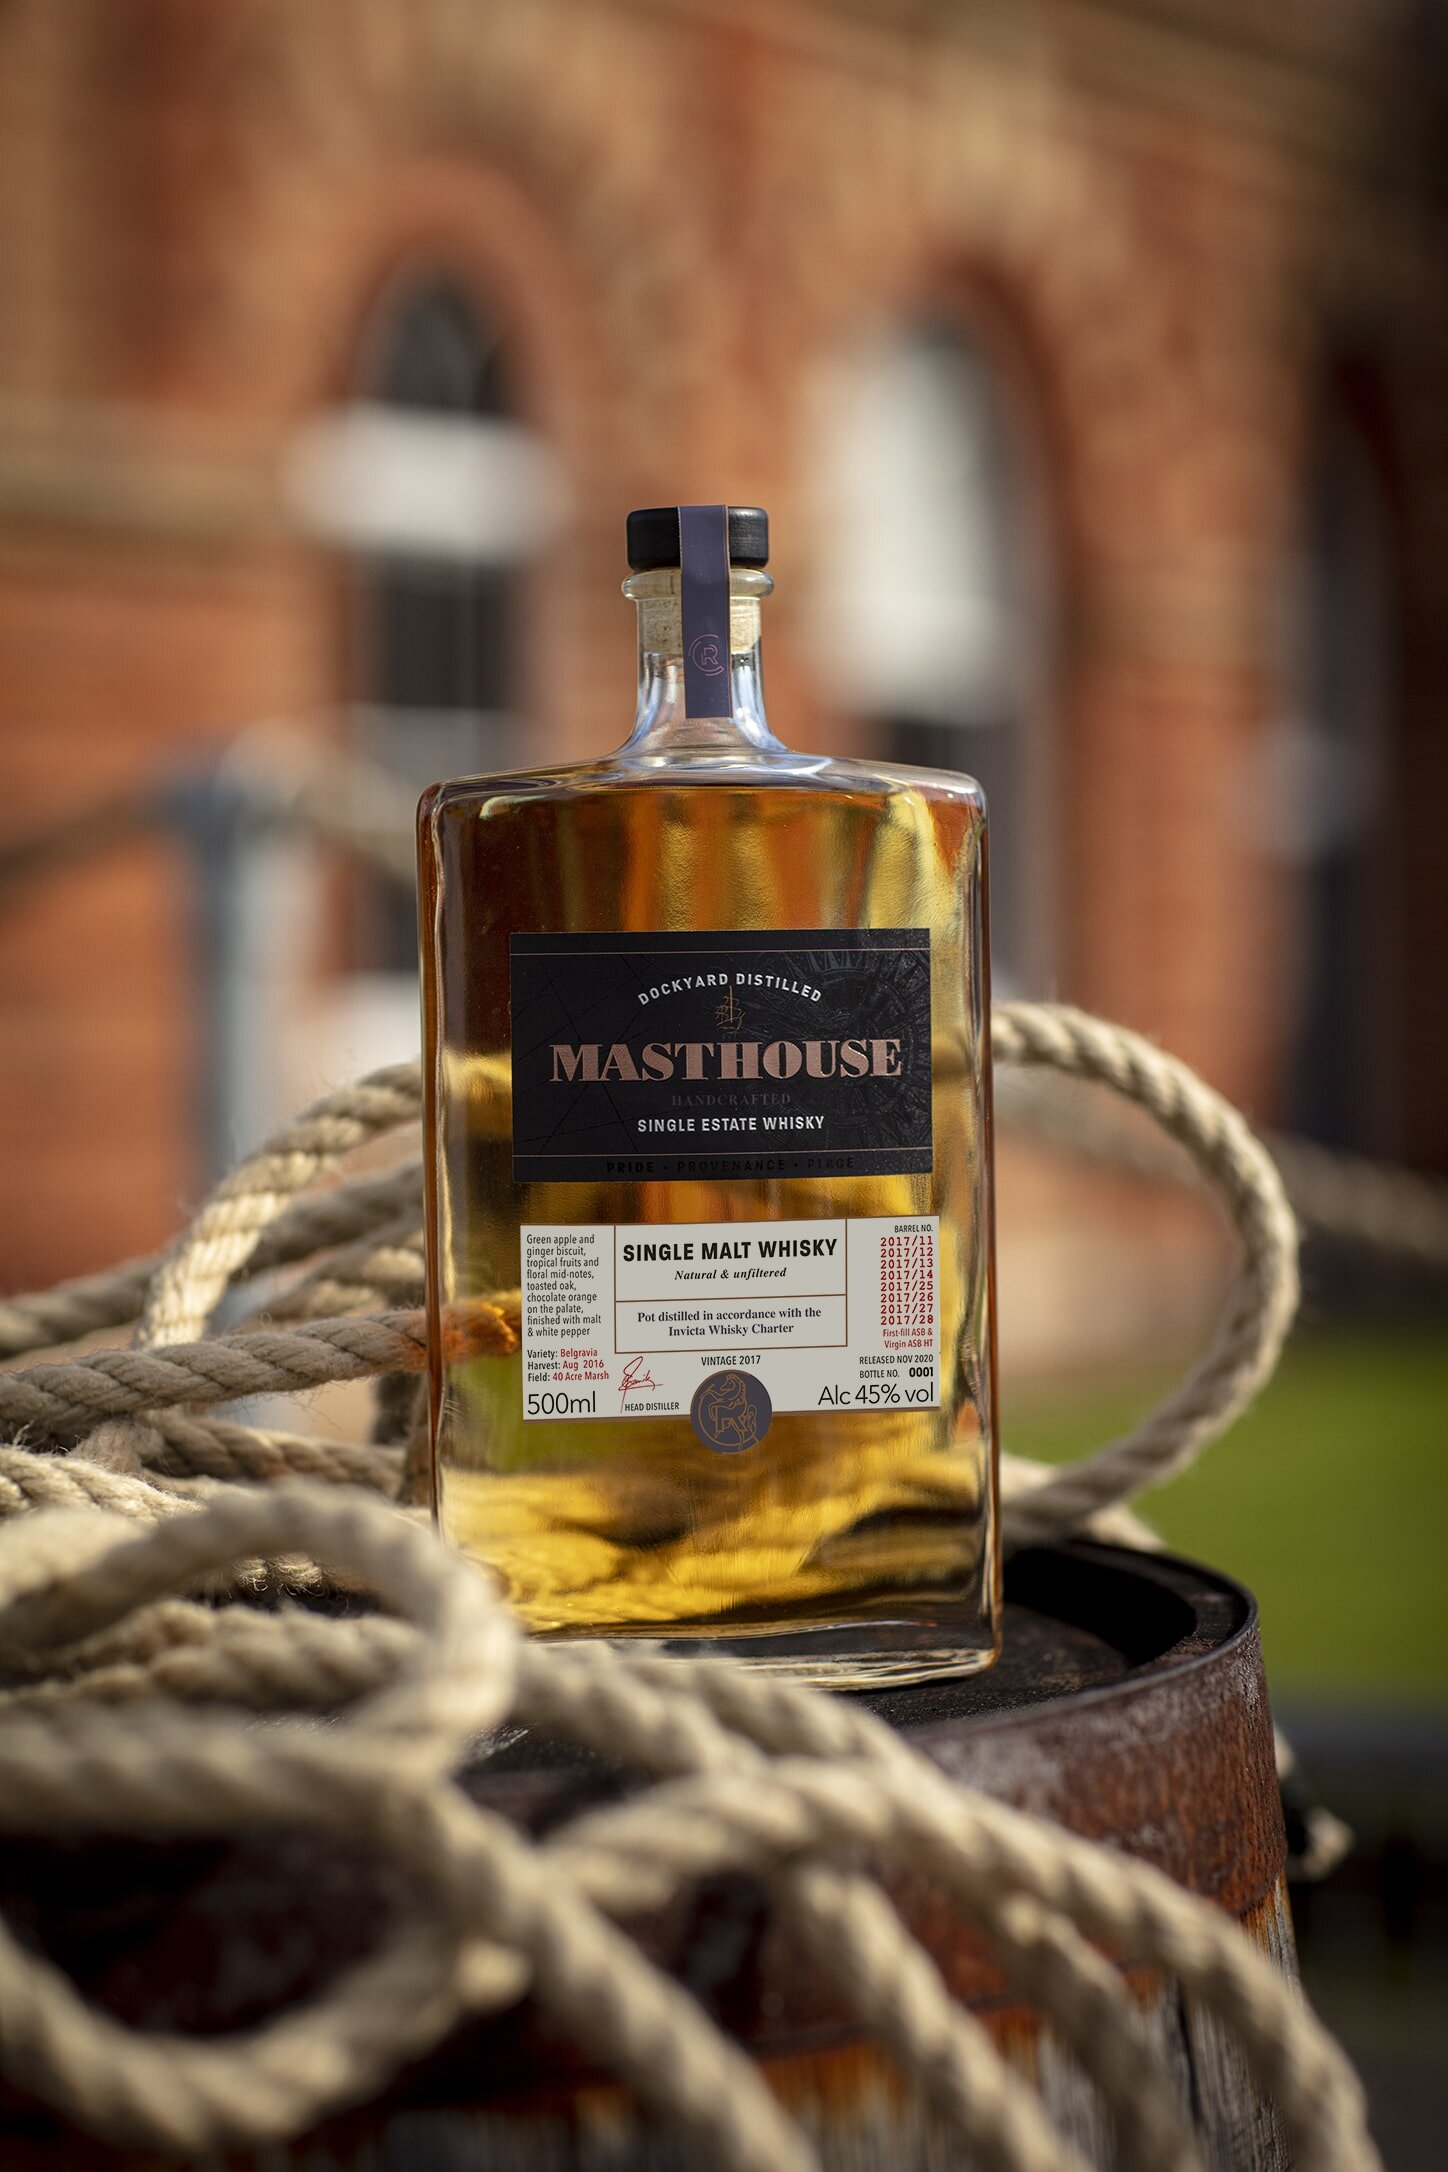 Masthouse single malt whisky